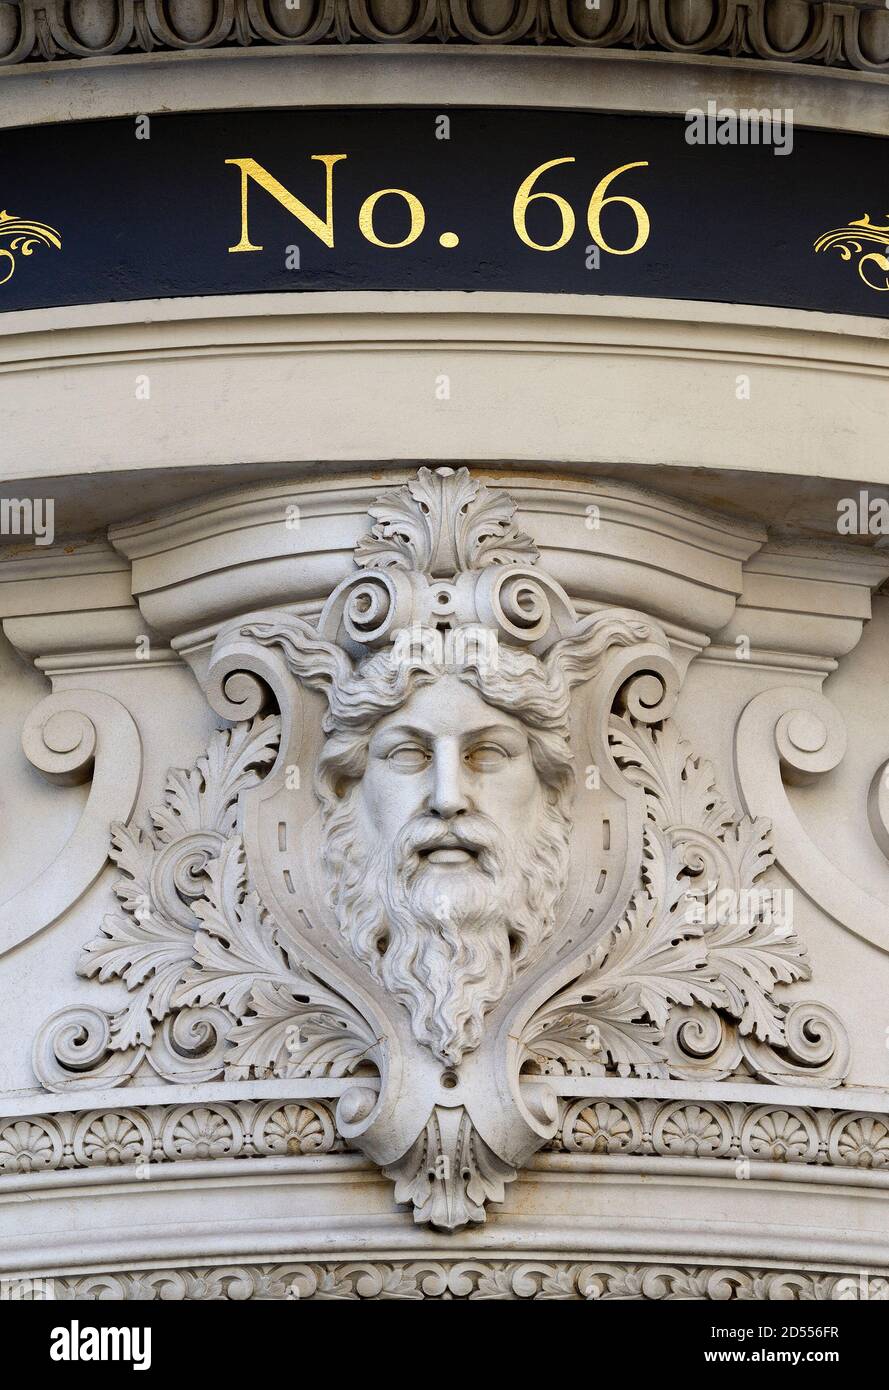 Londres, Angleterre, Royaume-Uni. Détail avec visage humain sculpté sur le pub Admiralty de Trafalgar Square Banque D'Images